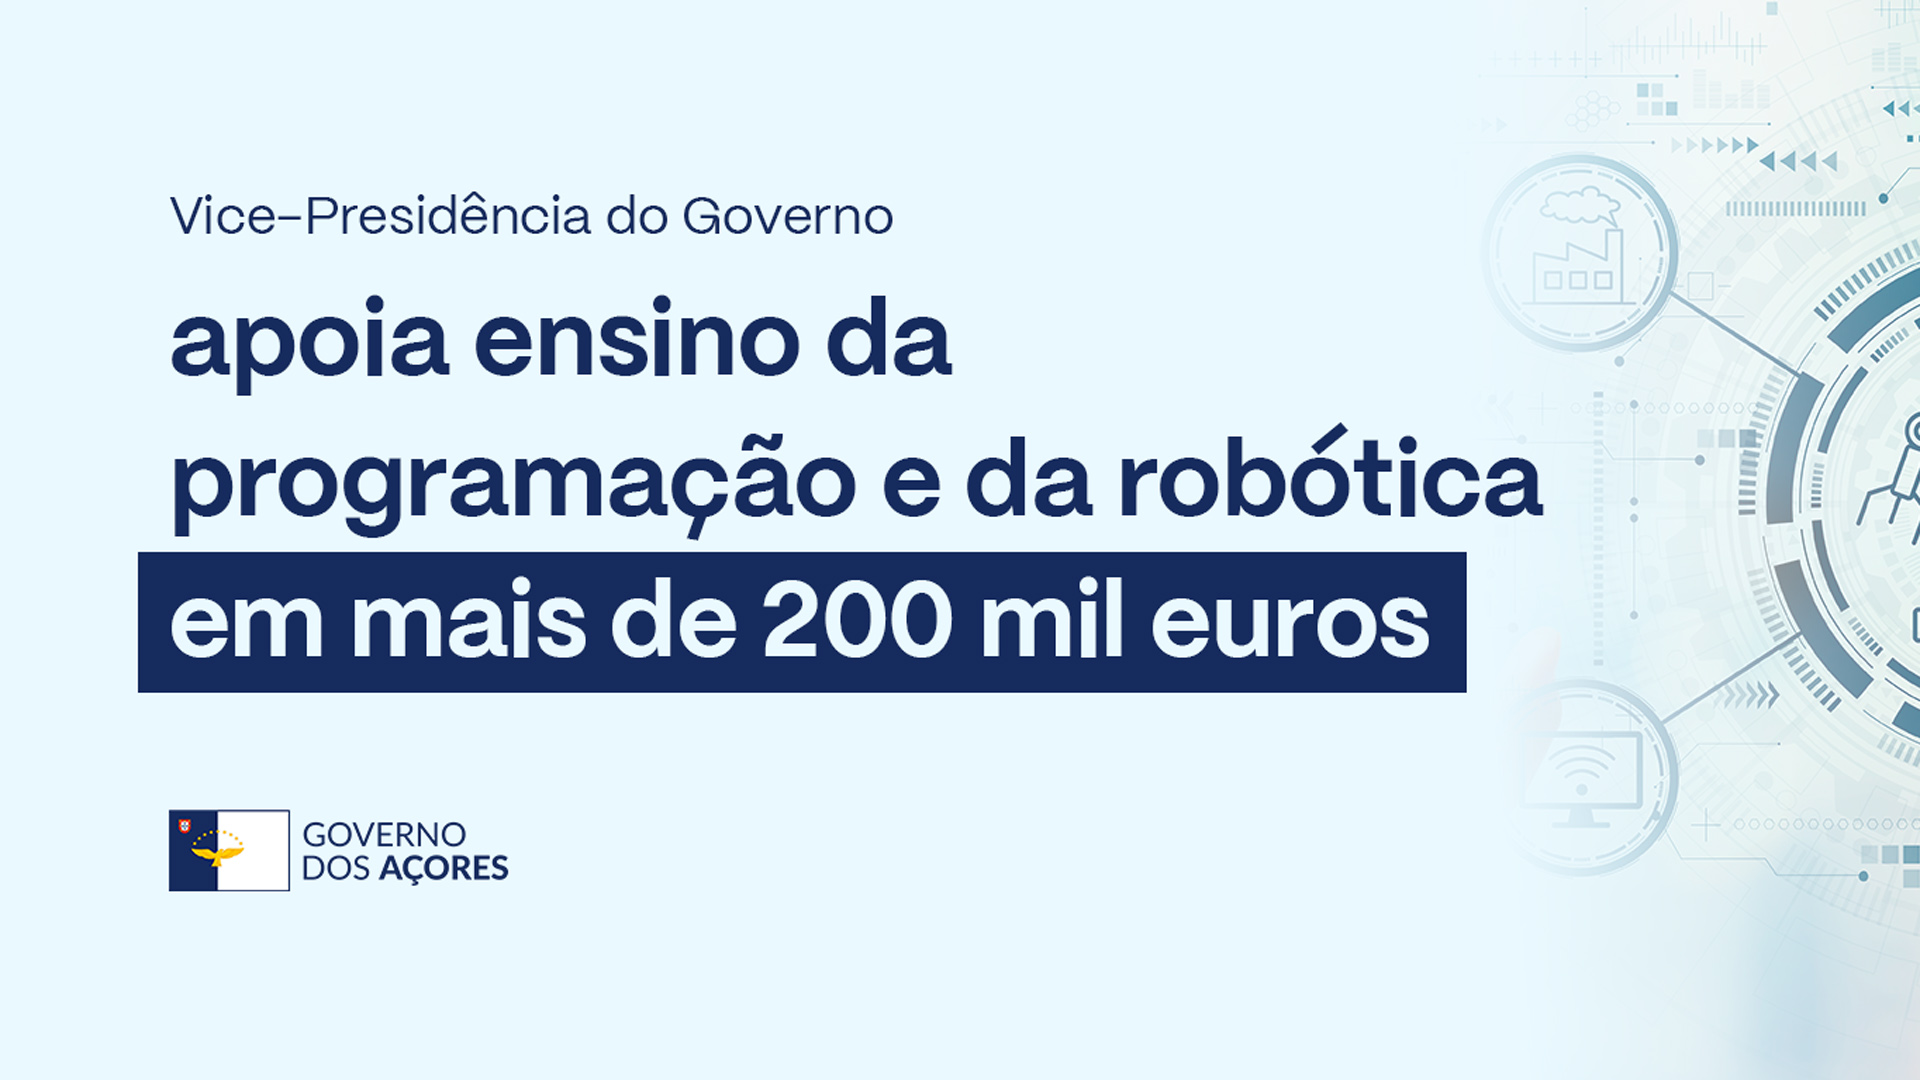 Vice-Presidência do Governo apoia ensino da programação e da robótica em mais de 200 mil euros